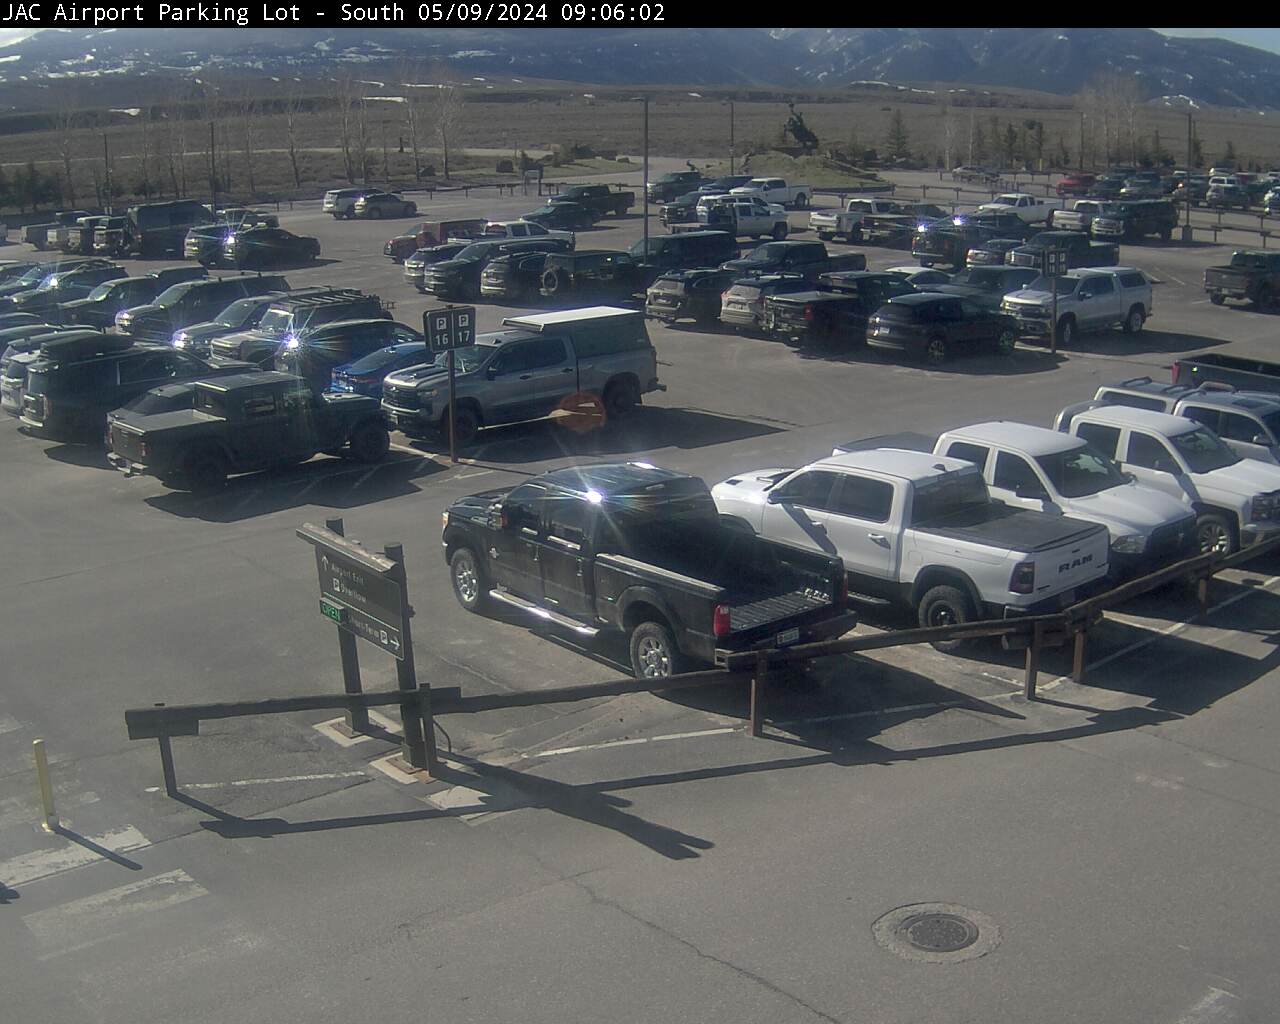 Jackson Hole Airport Webcam - South Parking Lot